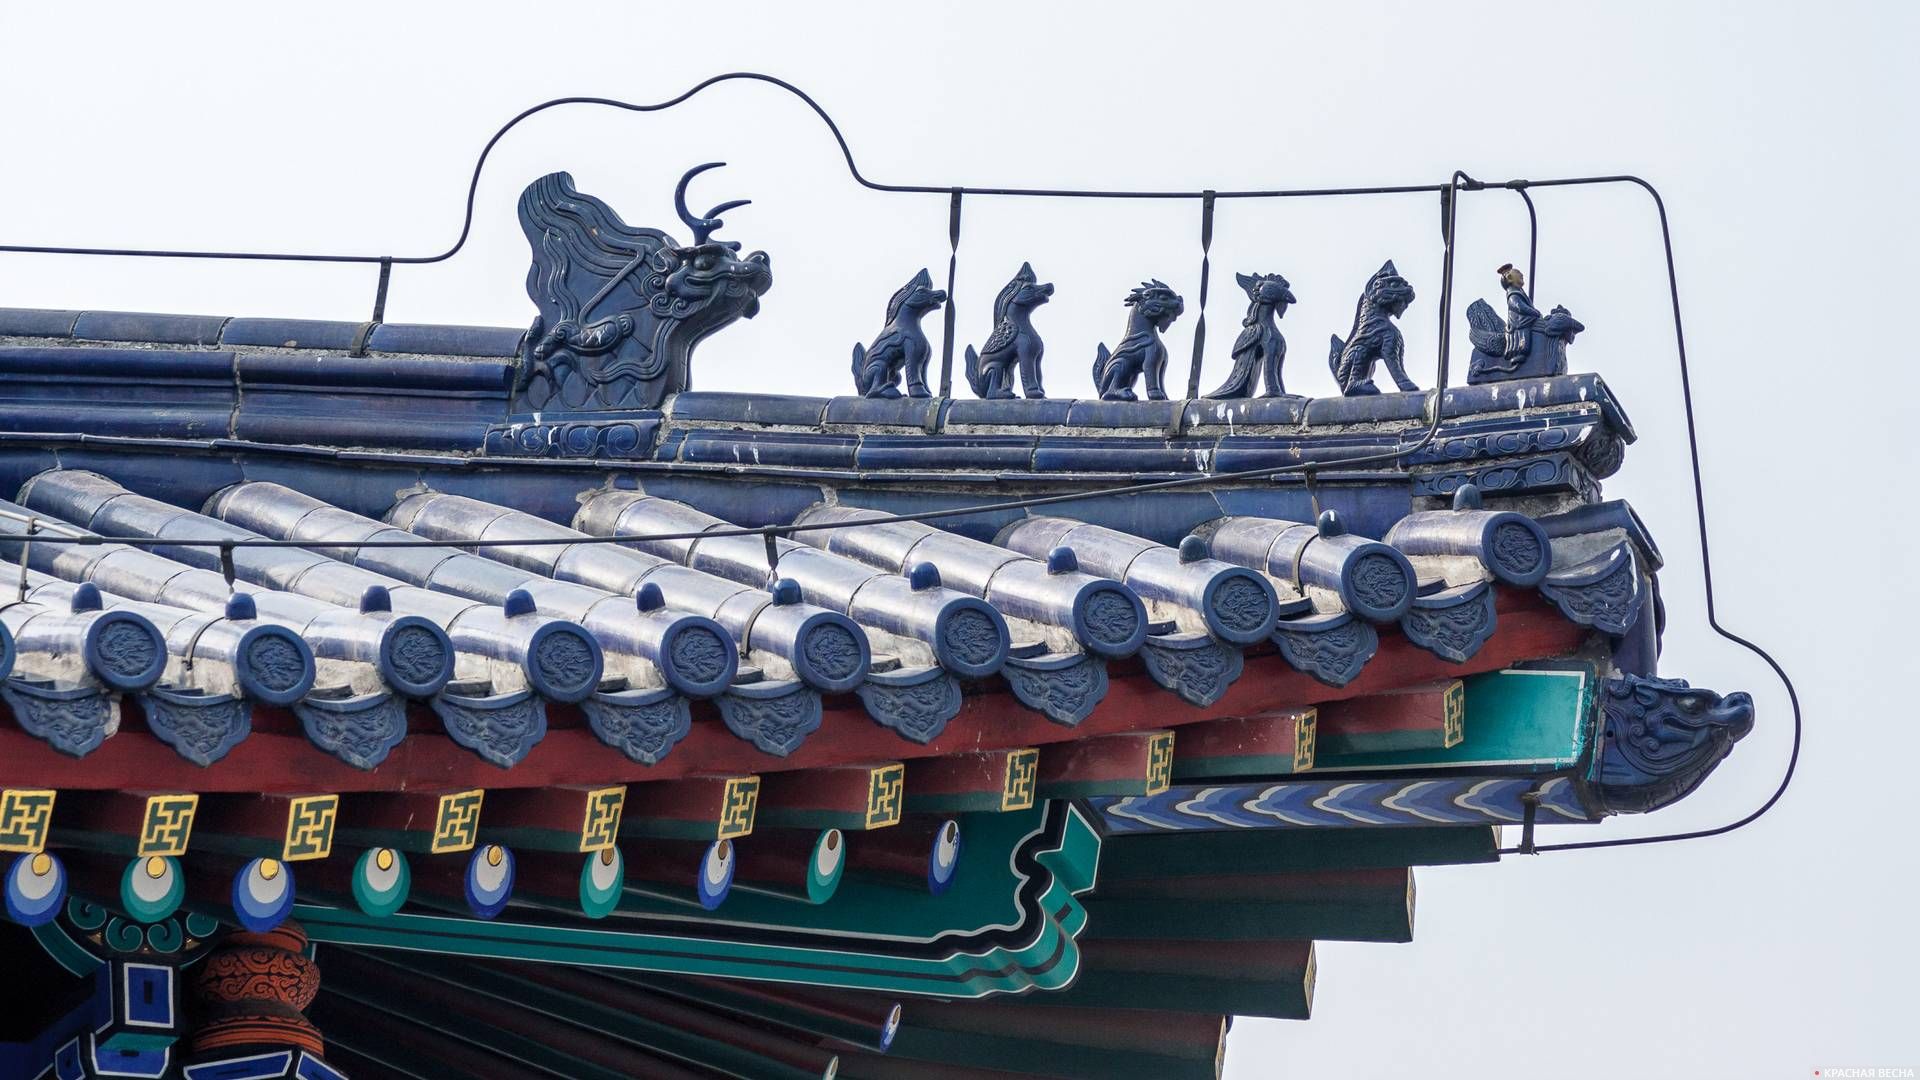 Императорский декор конька крыши, Храм Неба, Пекин, Китай. 12.03.2011